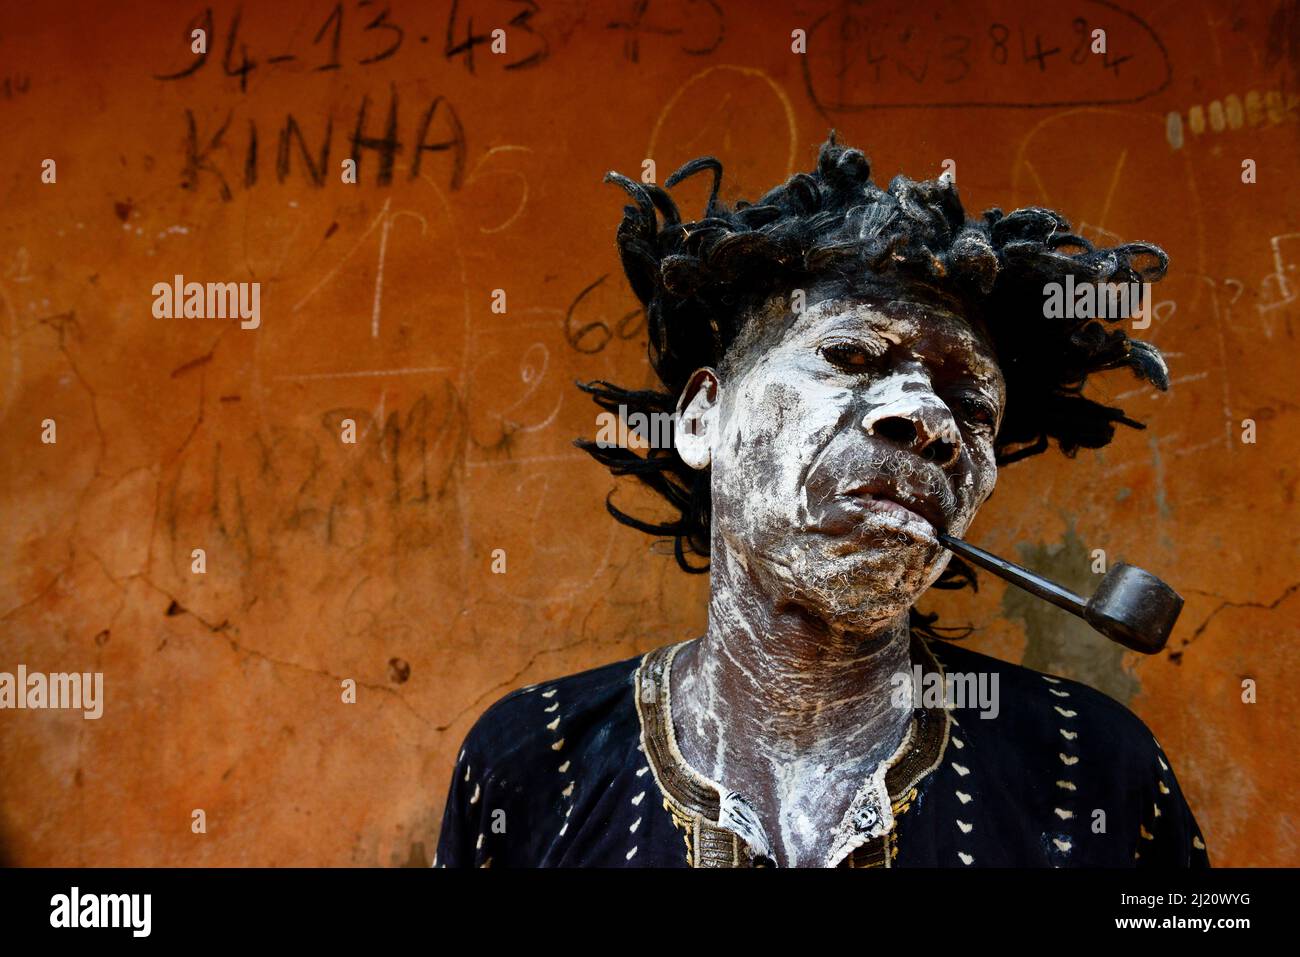 Un uomo rappresenta un personaggio malato e fumante, in una cerimonia voodoo nel villaggio di Bohicon, Benin. Gennaio 2020 Foto Stock